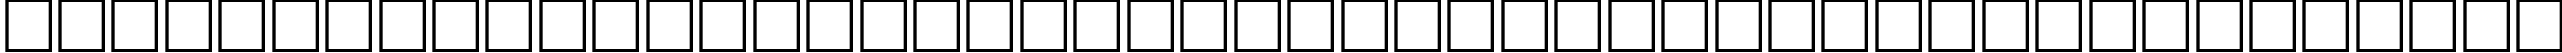 Пример написания шрифтом WP Hebrew David текста на белорусском